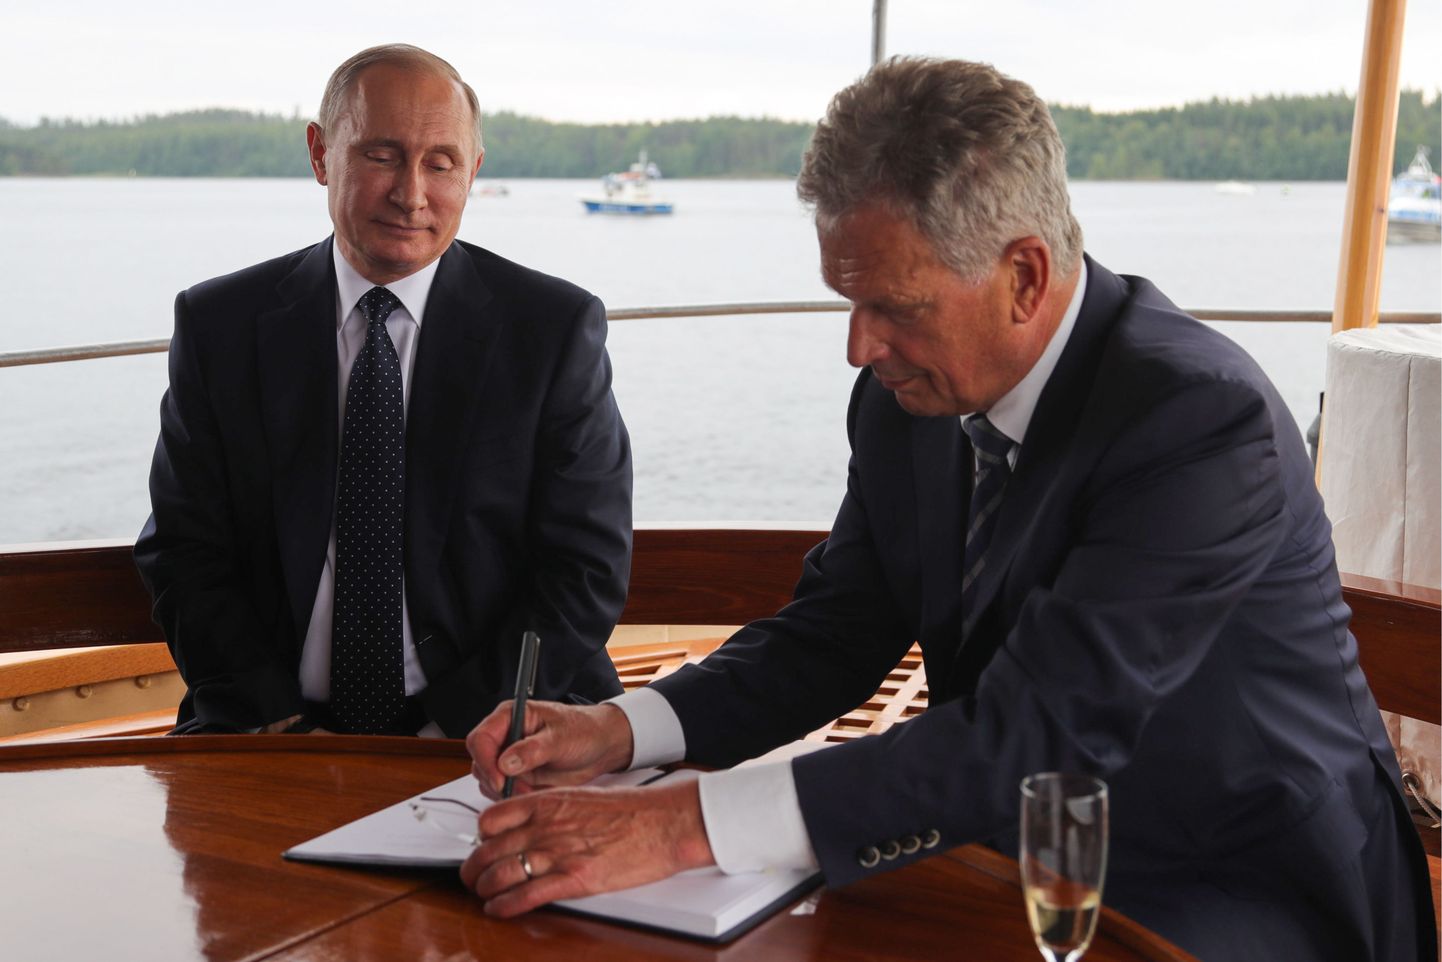 Vene president Vladimir Putin ja teda võõrustanud Soome riigipea Sauli Niinistö eile Saimaa järvestikul kruiisiauriku pardal.